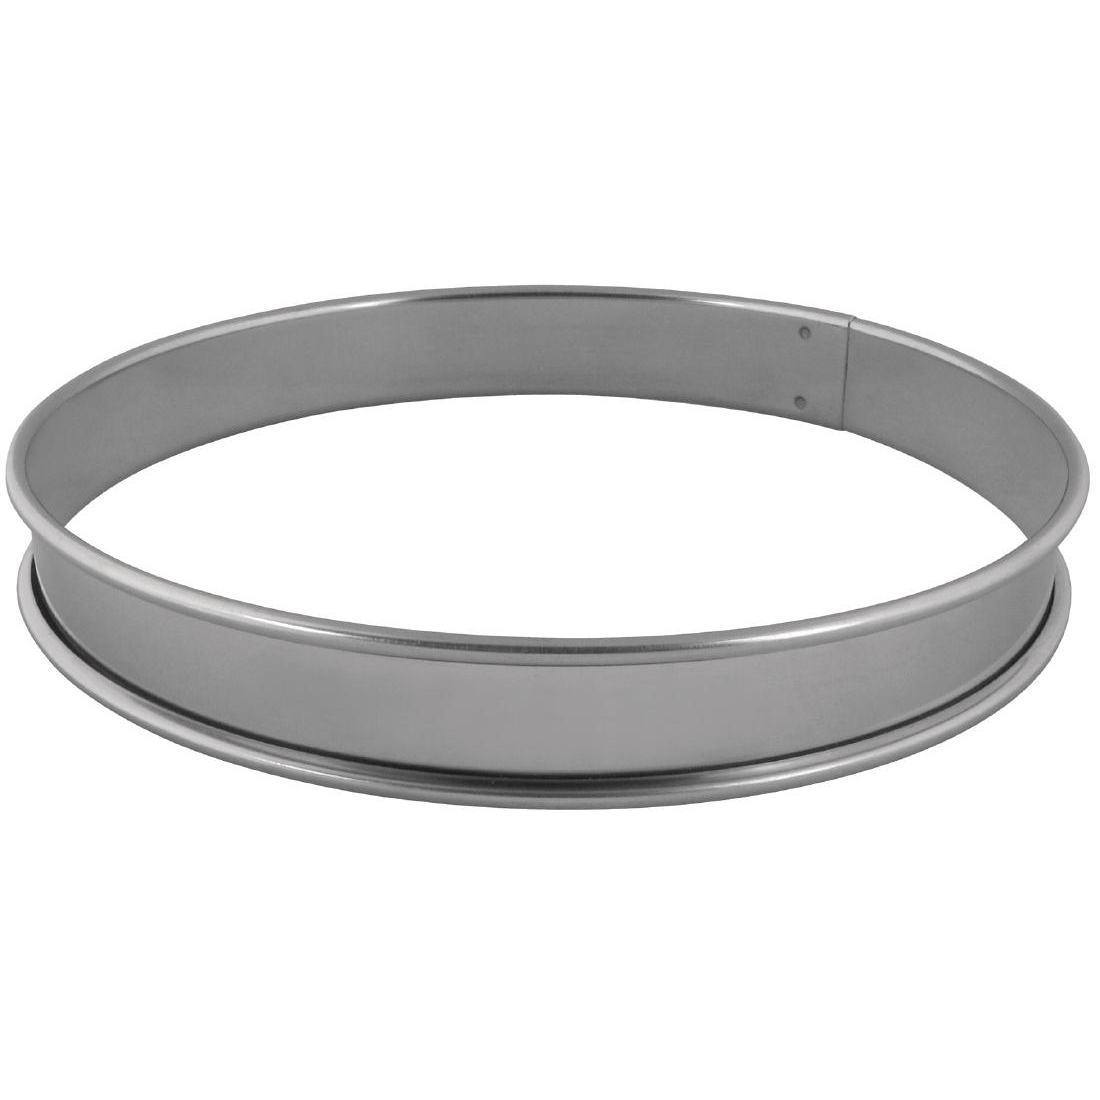 Matfer Stainless Steel Tart Ring 28cm